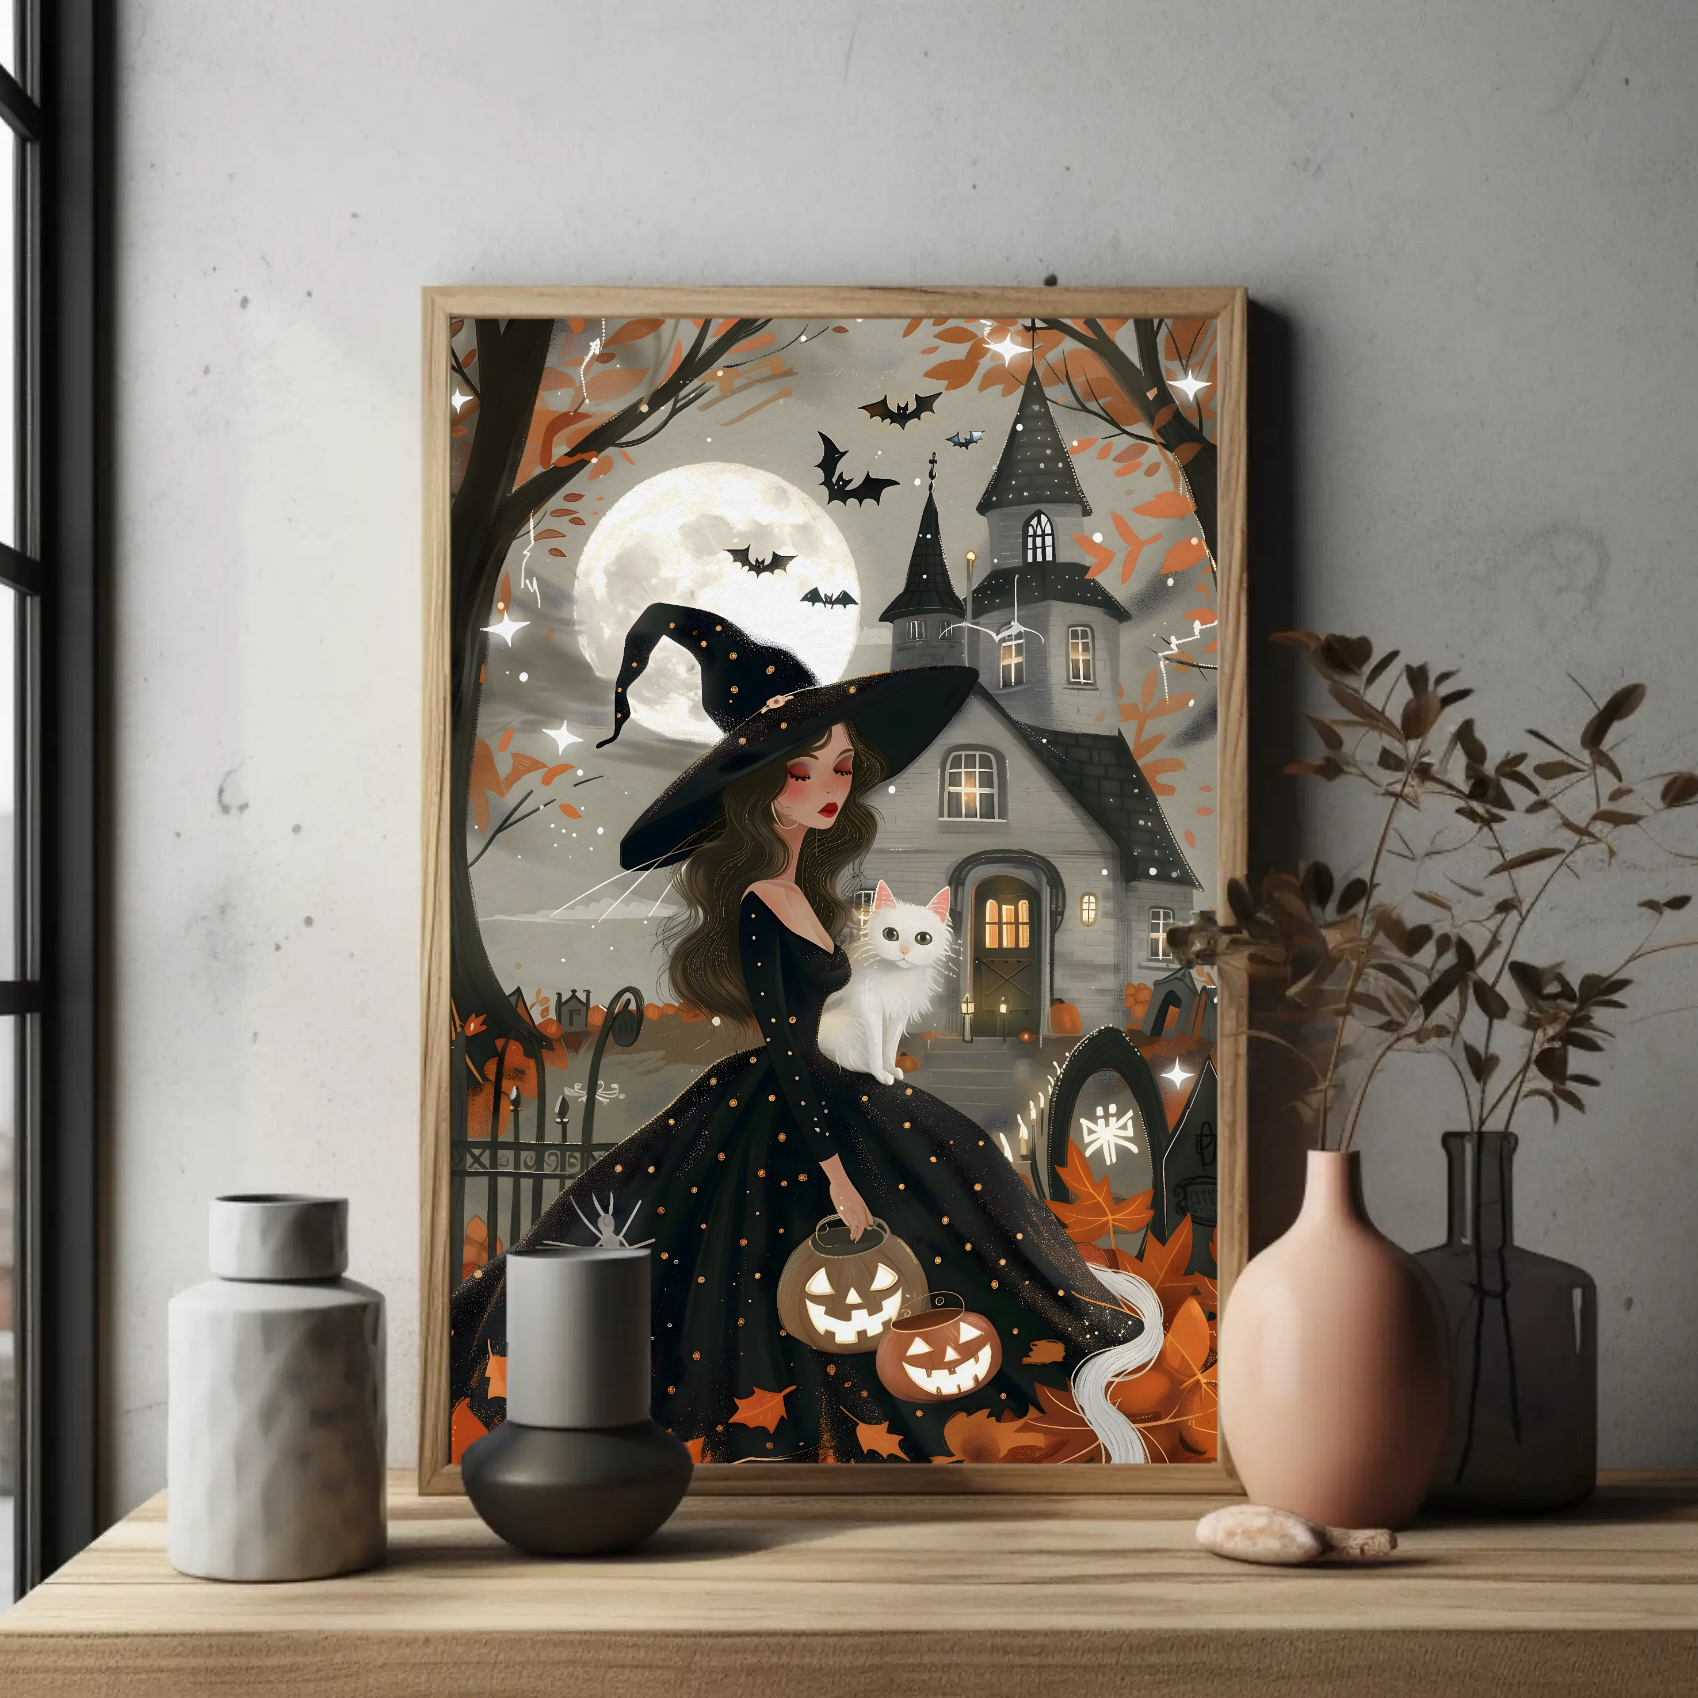 Moonlight Witch Wall Art: Halloween Decor